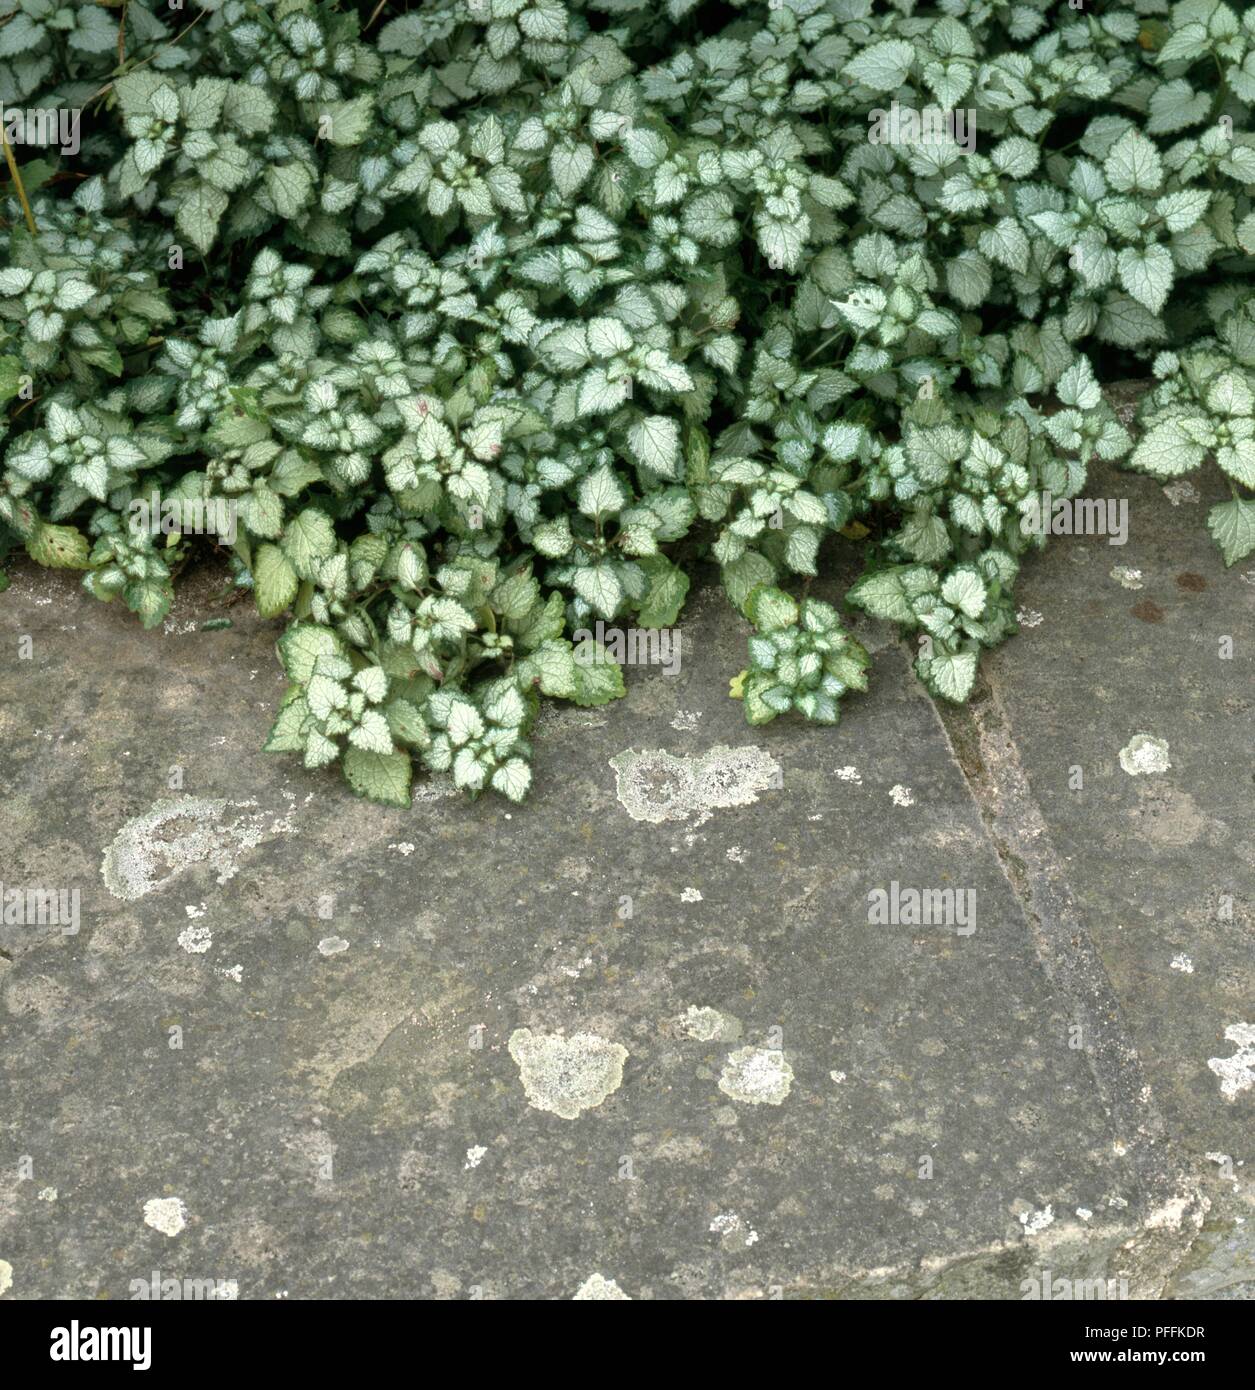 Lamium maculatum 'Beacon Silver' growing over garden path Stock Photo